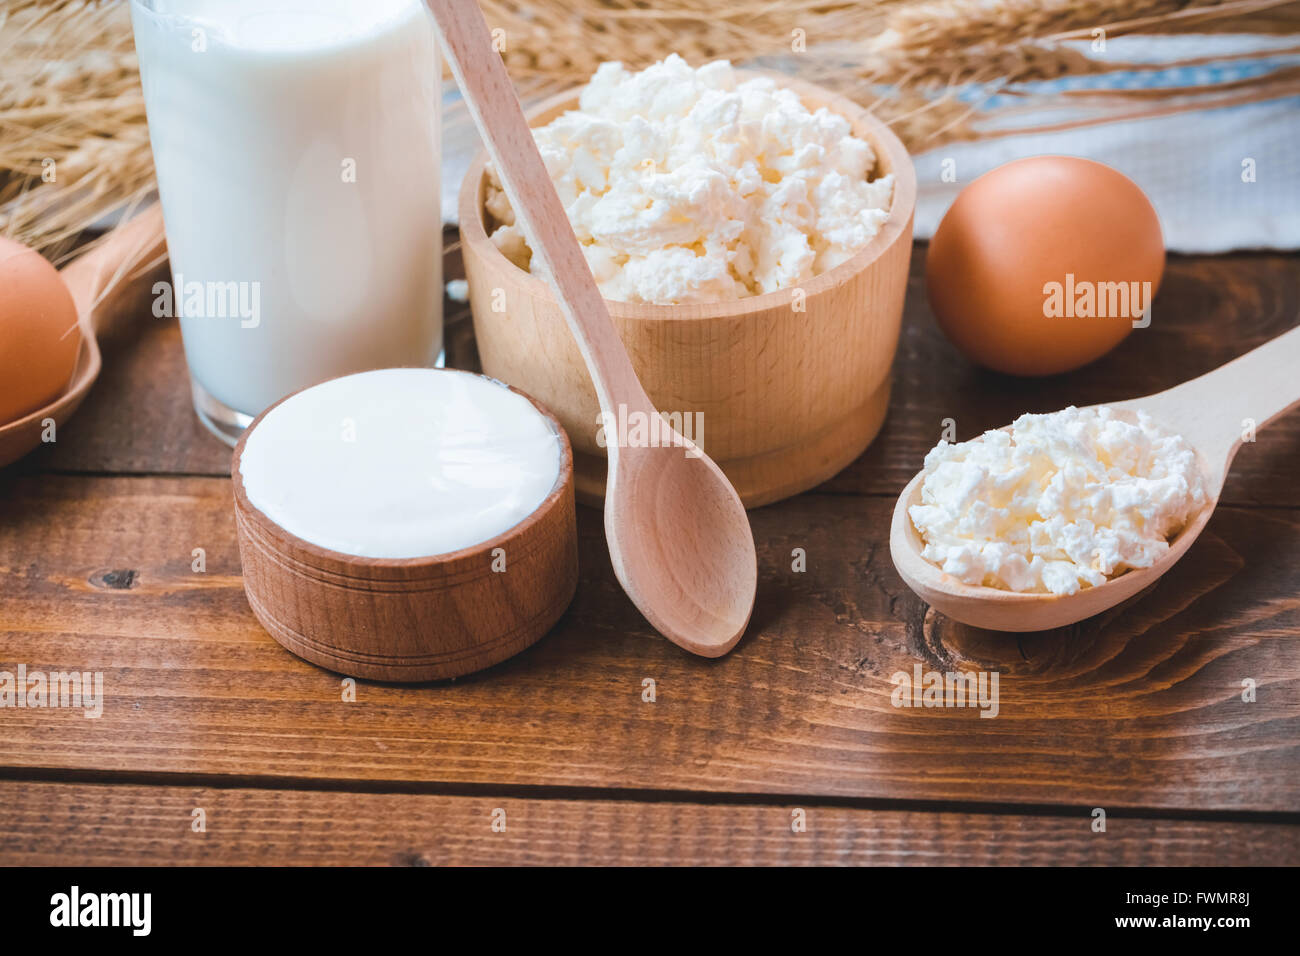 Naturale prodotti fatti in casa: latte, formaggio, panna acida e uova sul vecchio sfondo di legno con spighe di grano. con lo spazio per il tuo te Foto Stock